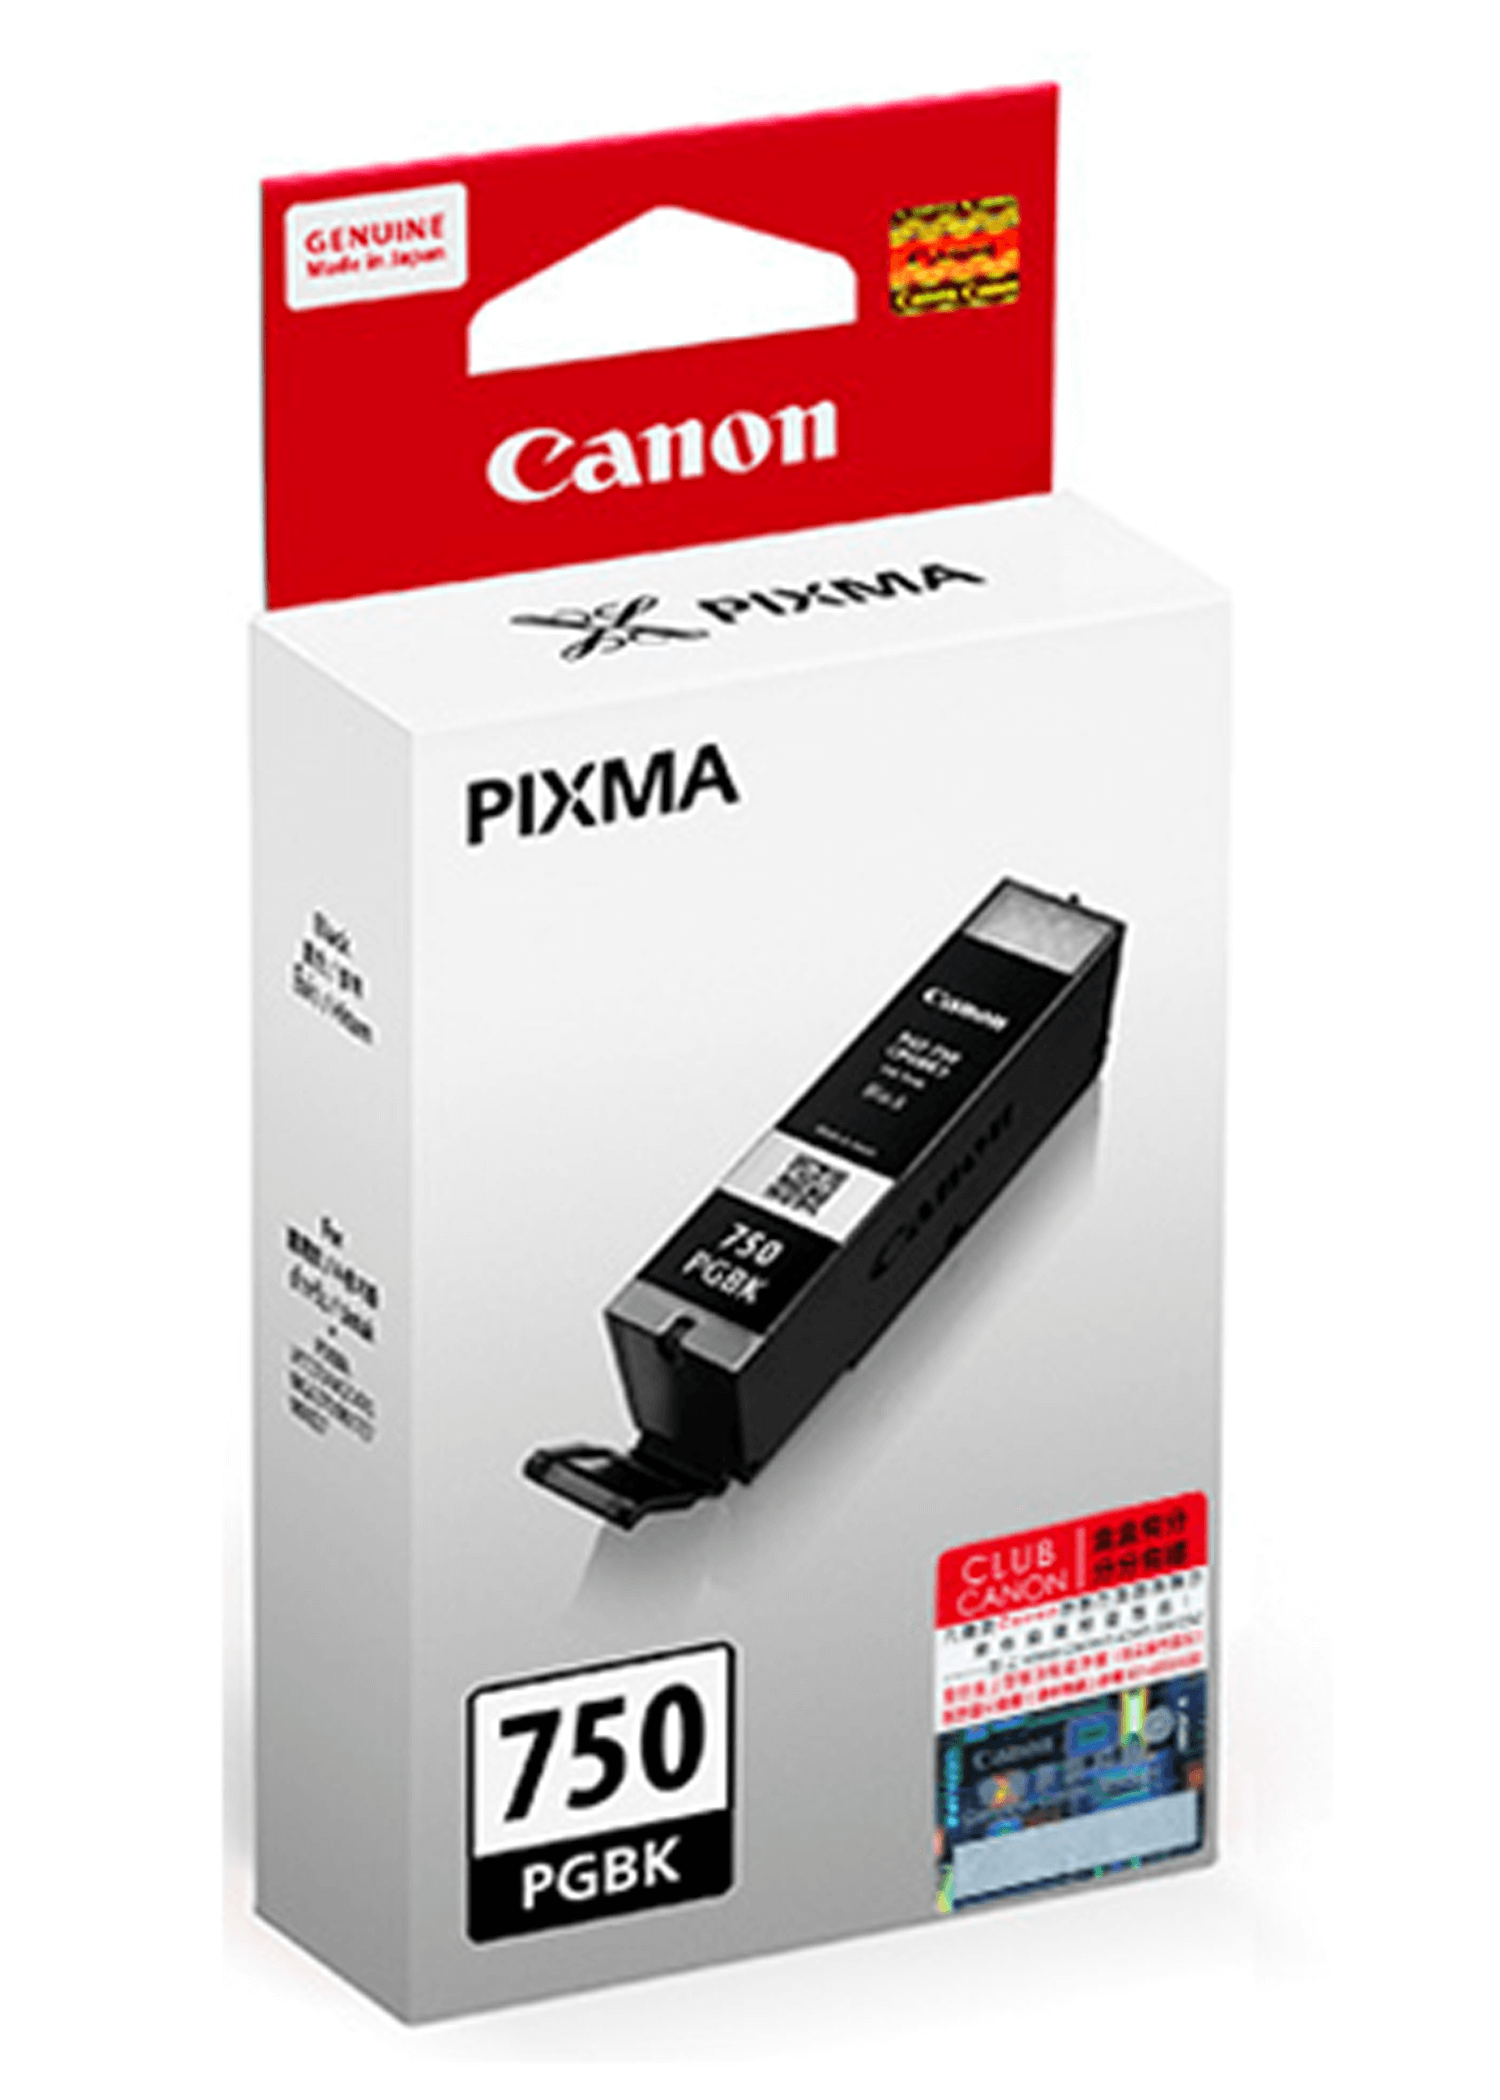 ตลับหมึกอิงค์เจ็ท Canon PGI-750 PGBK สีดำ